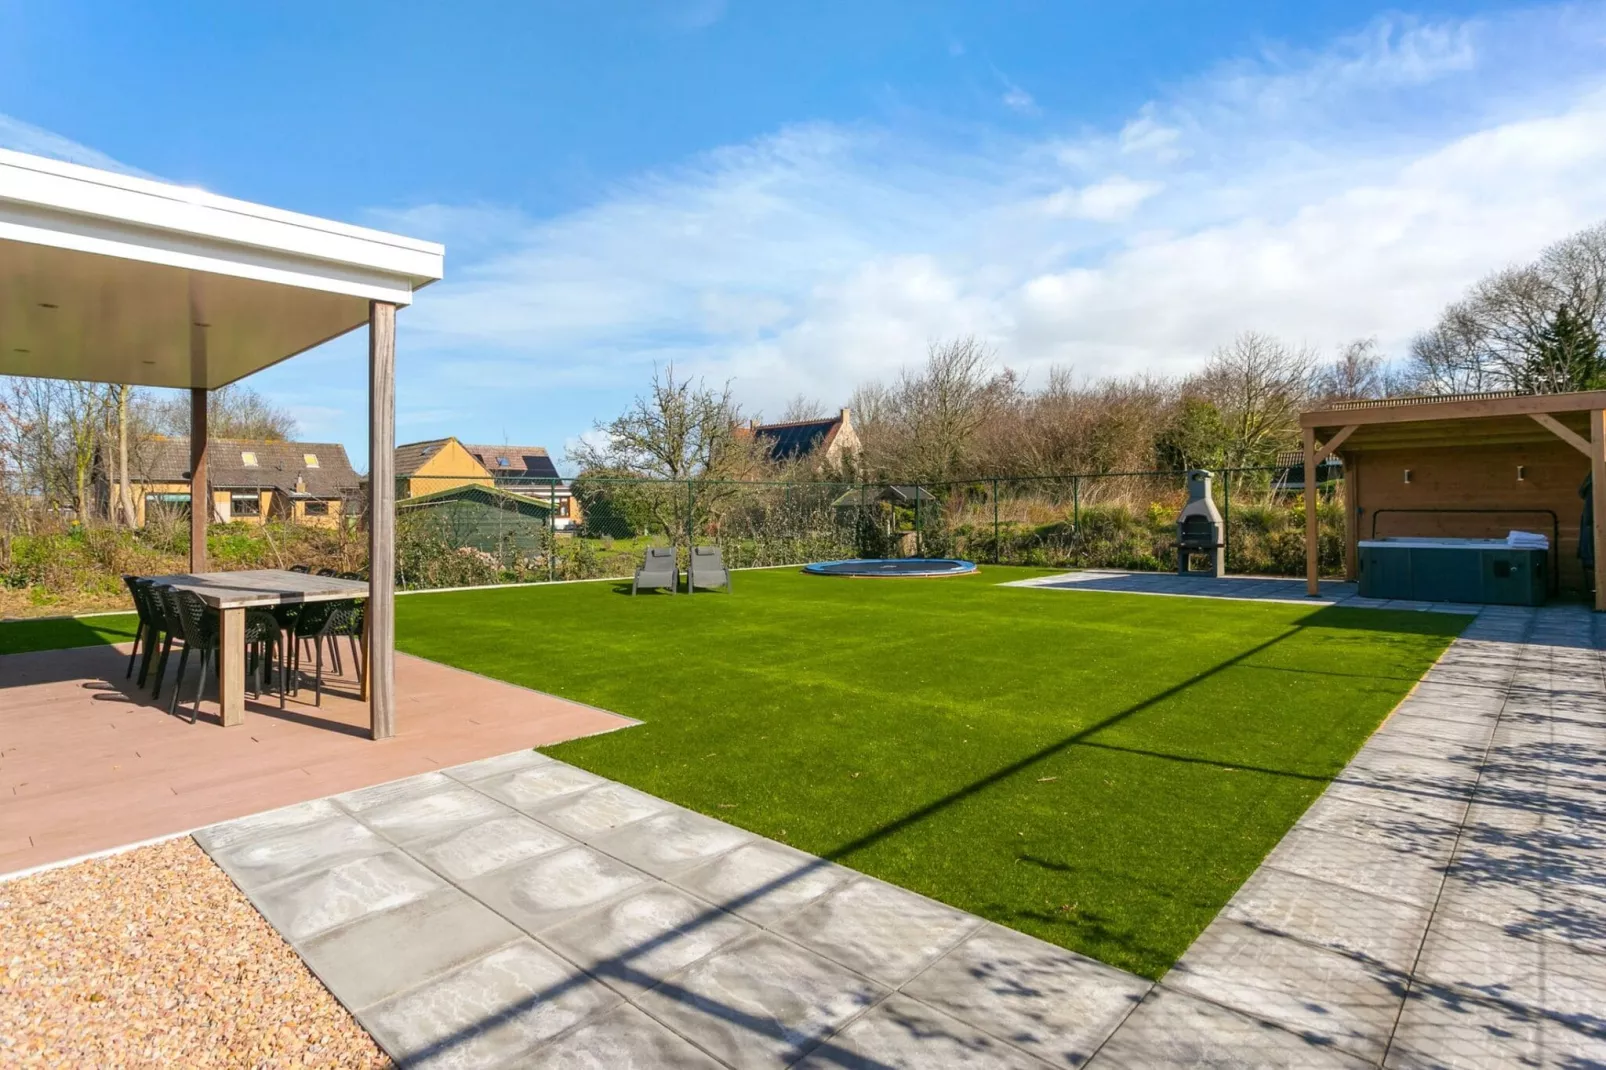 Villa Hopper met jacuzzi extra kosten voor gebruik-Tuinen zomer